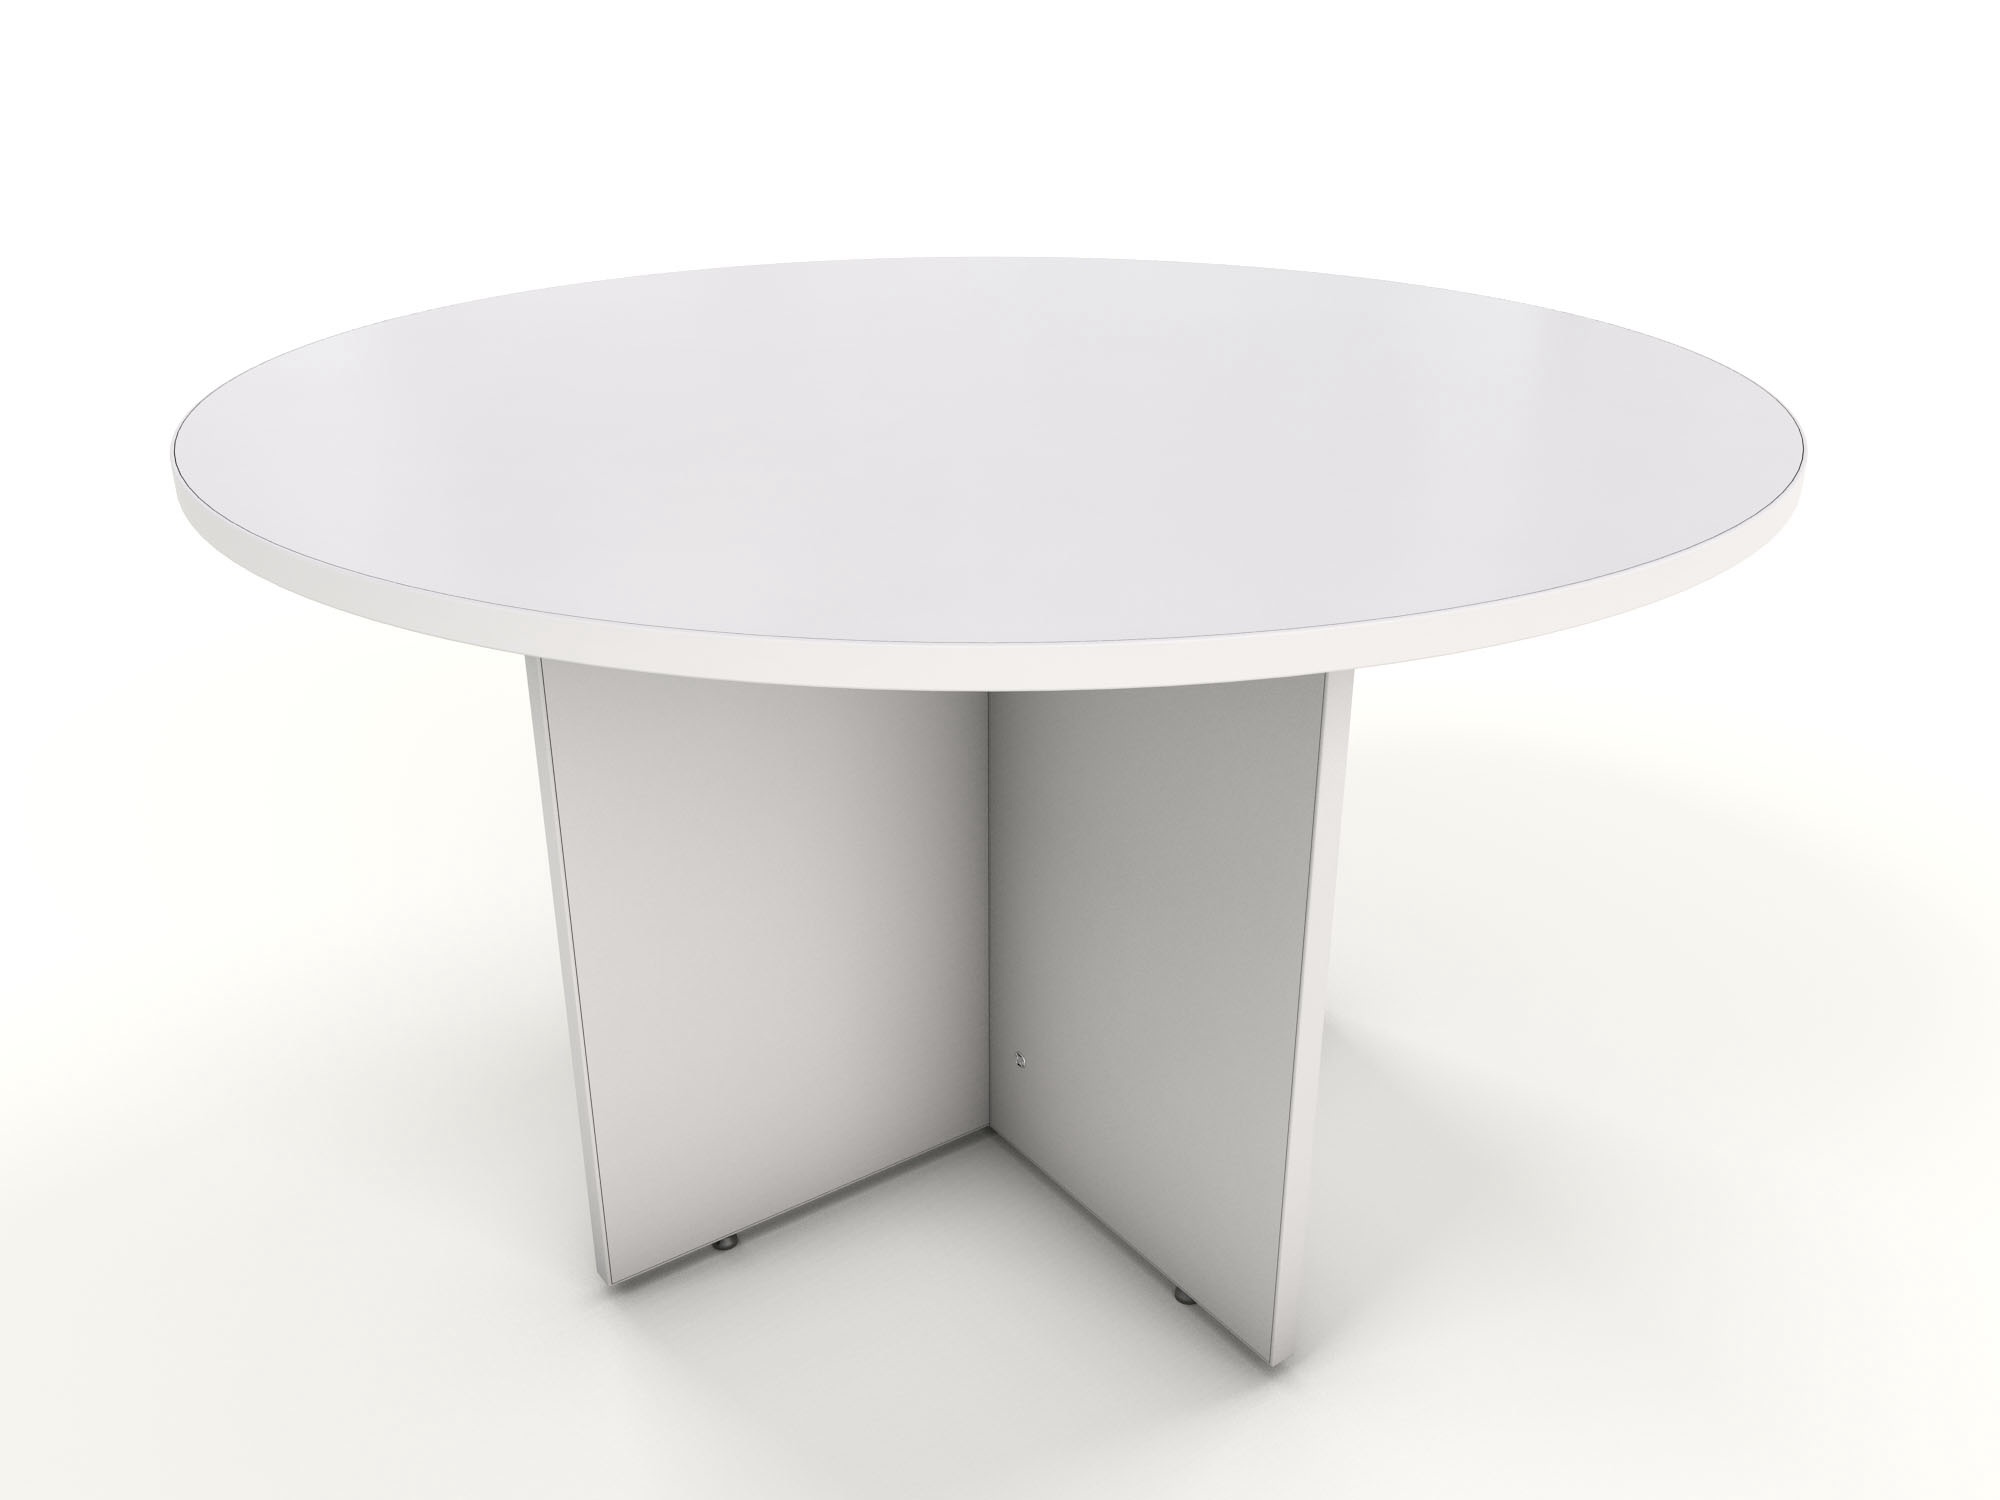 White round table 1200 dia